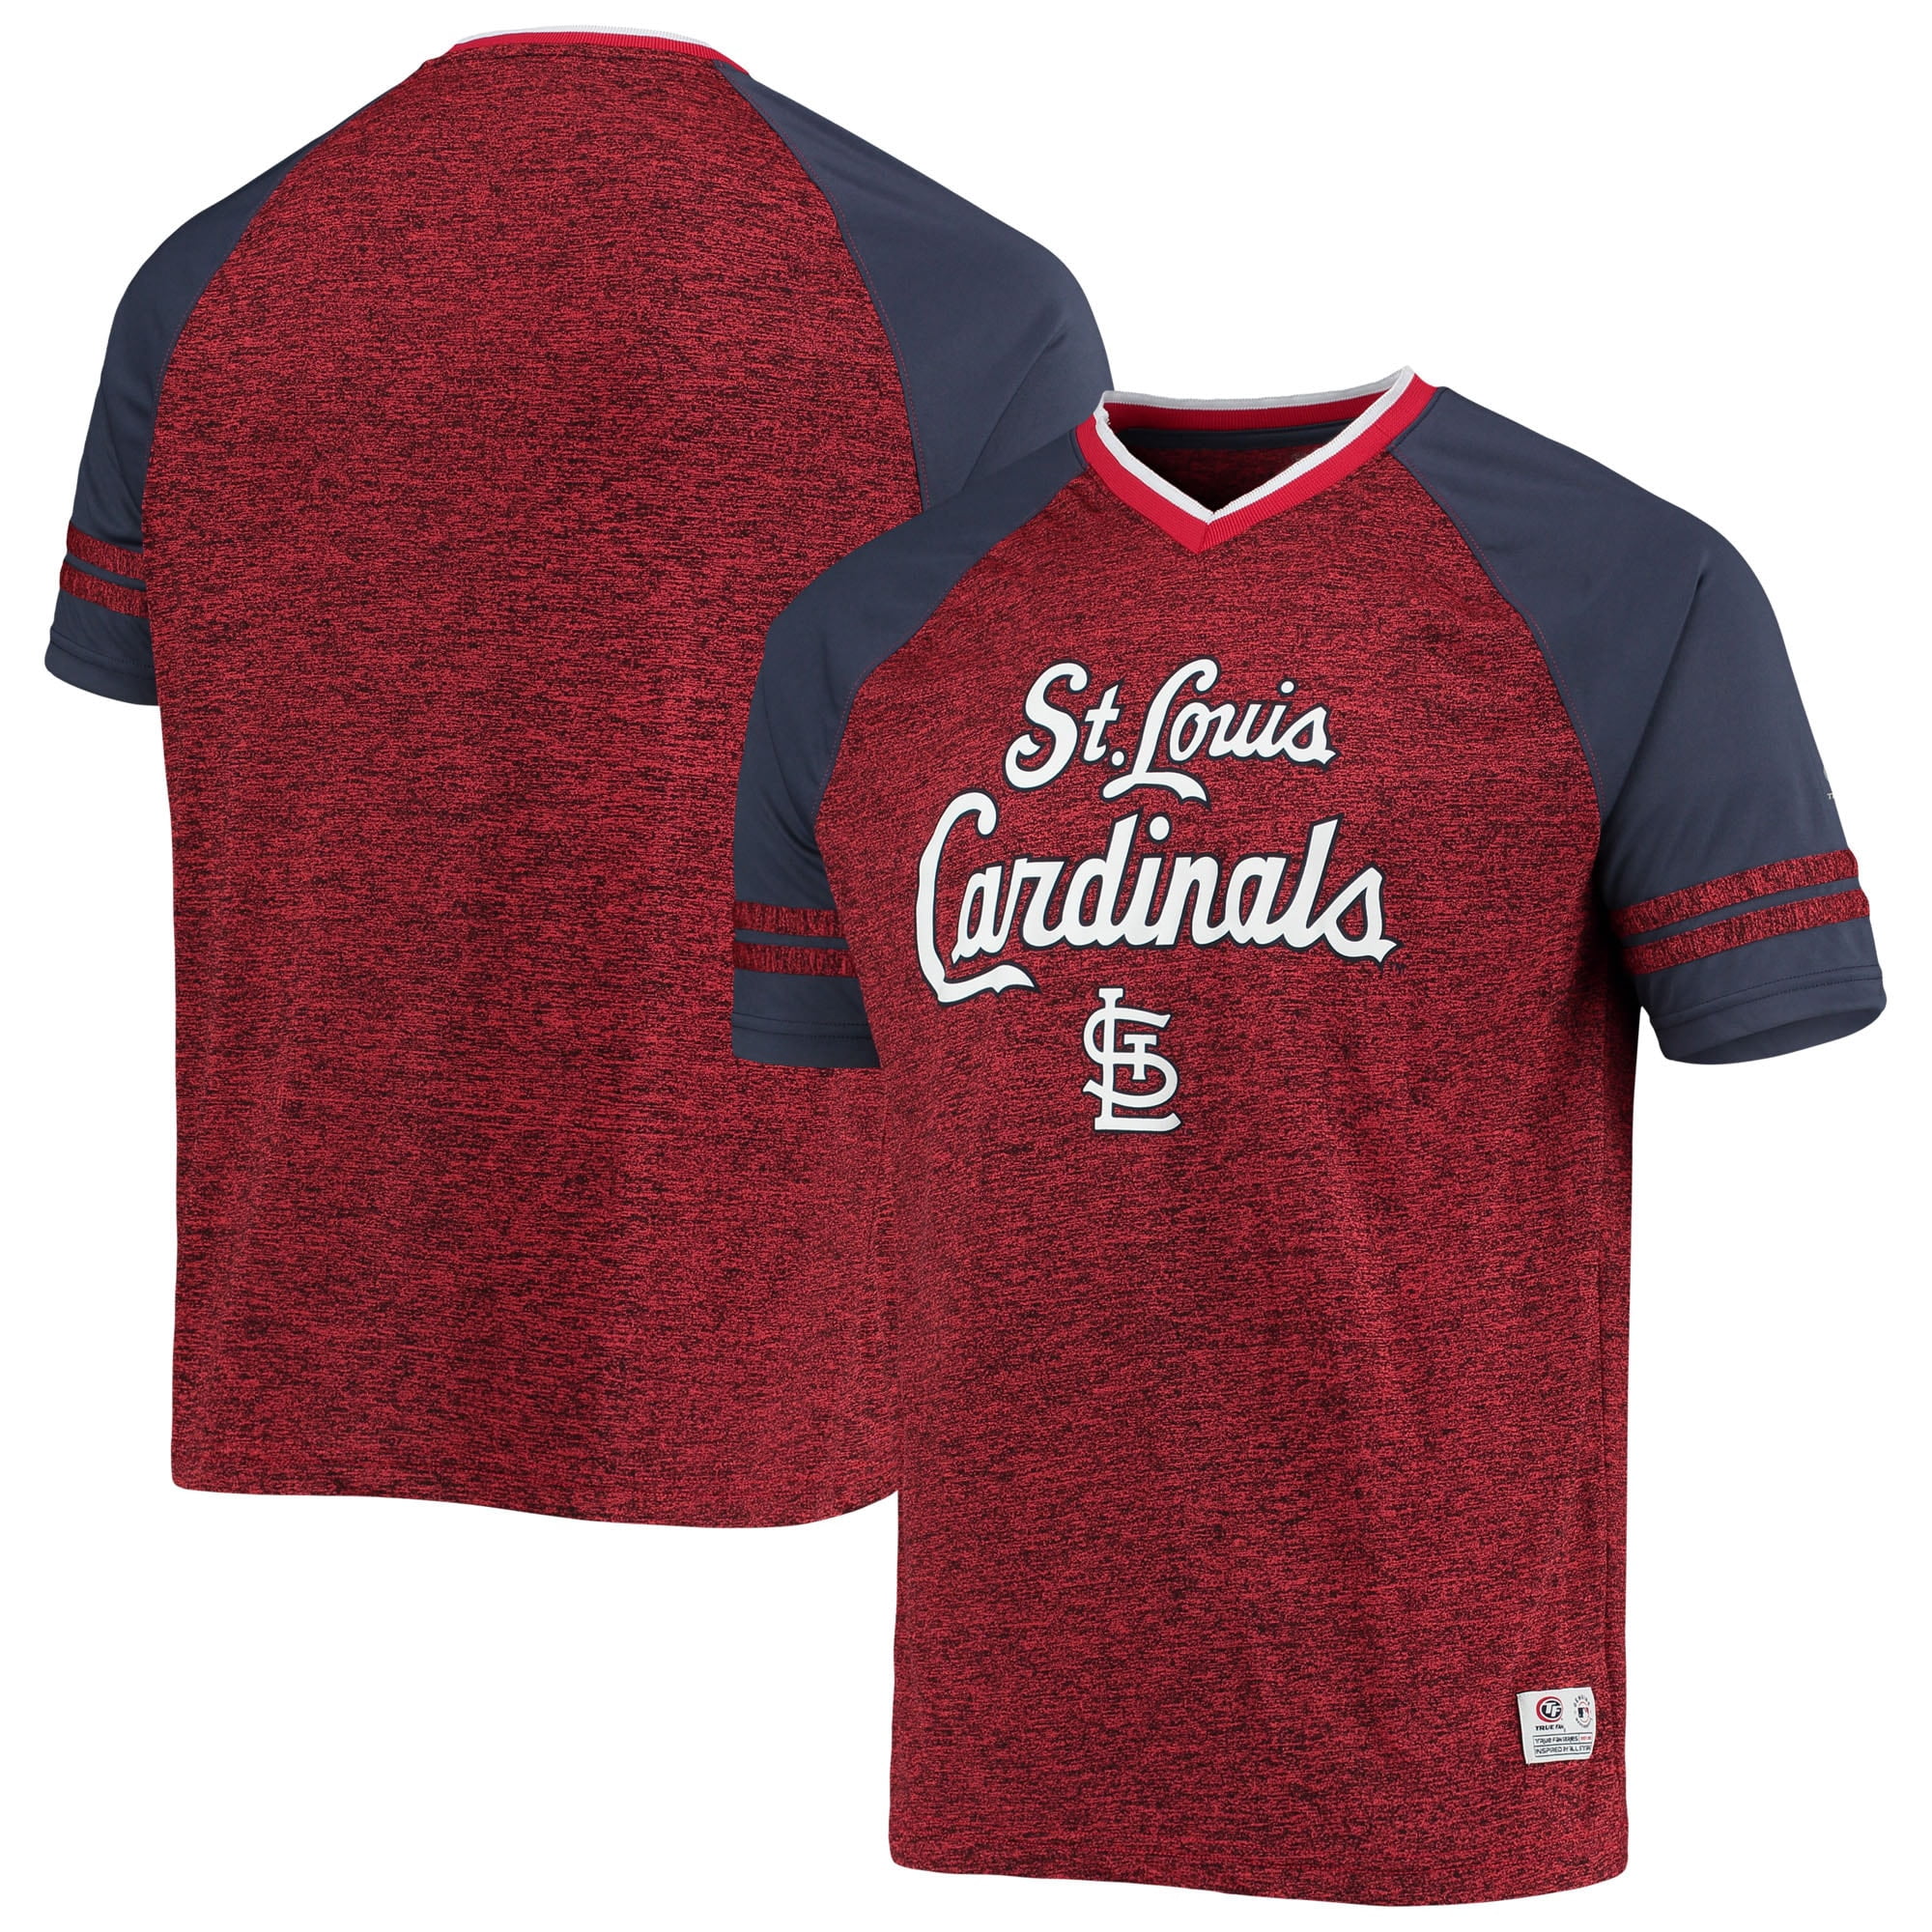 Paul Goldschmidt St. Louis Cardinals Autographed Powder Blue Nike Authentic  Jersey